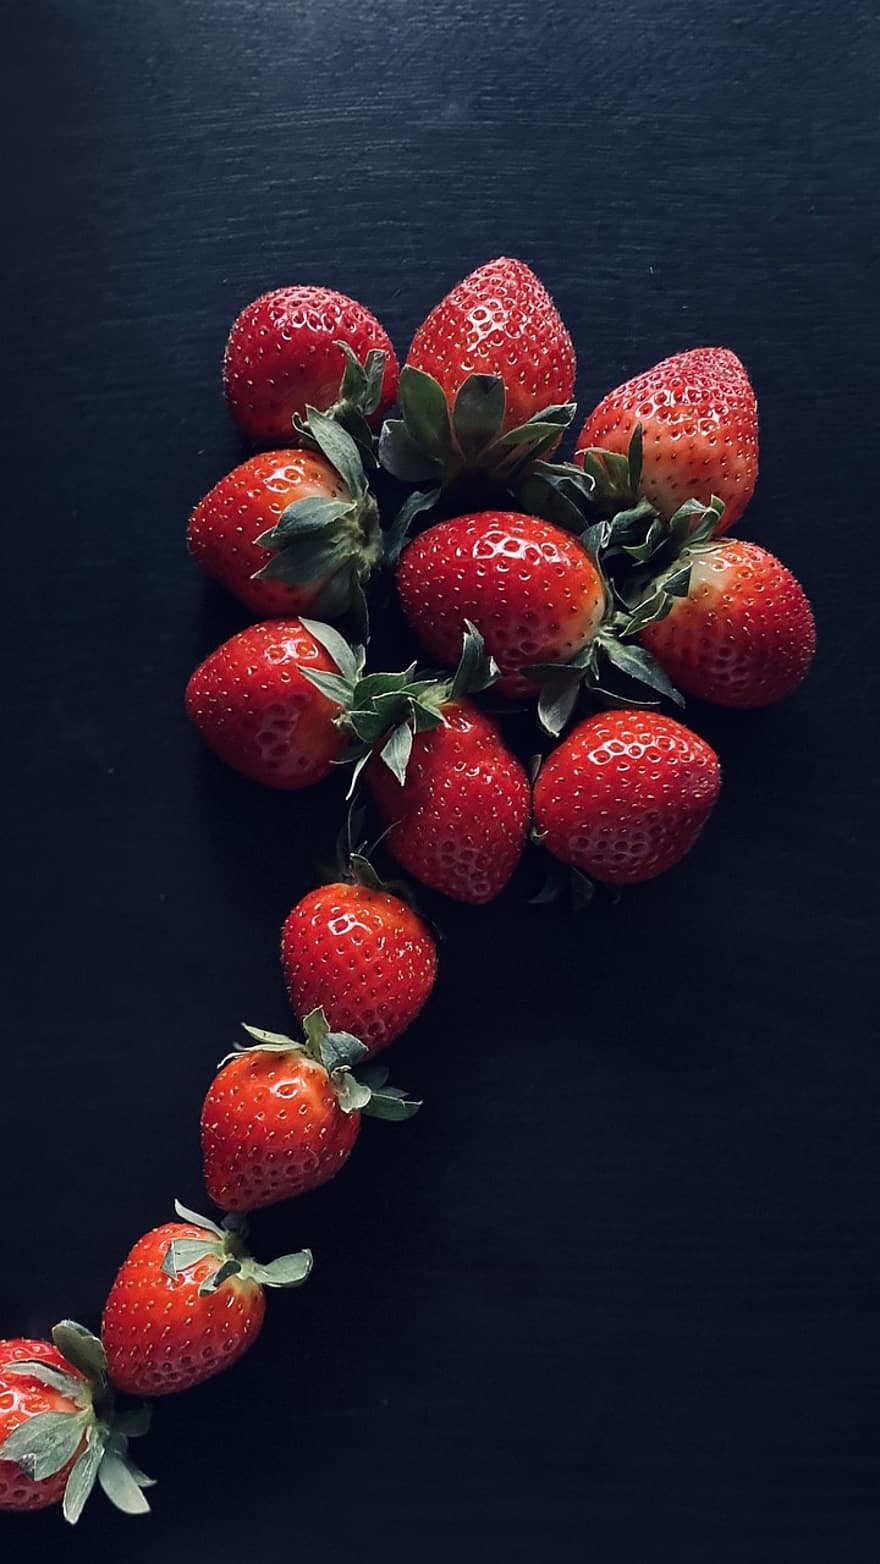 frukt, jordgubbe, organisk, mellanmål, mat, hälsosam, bär, friskhet, närbild, mogen, bärfrukt